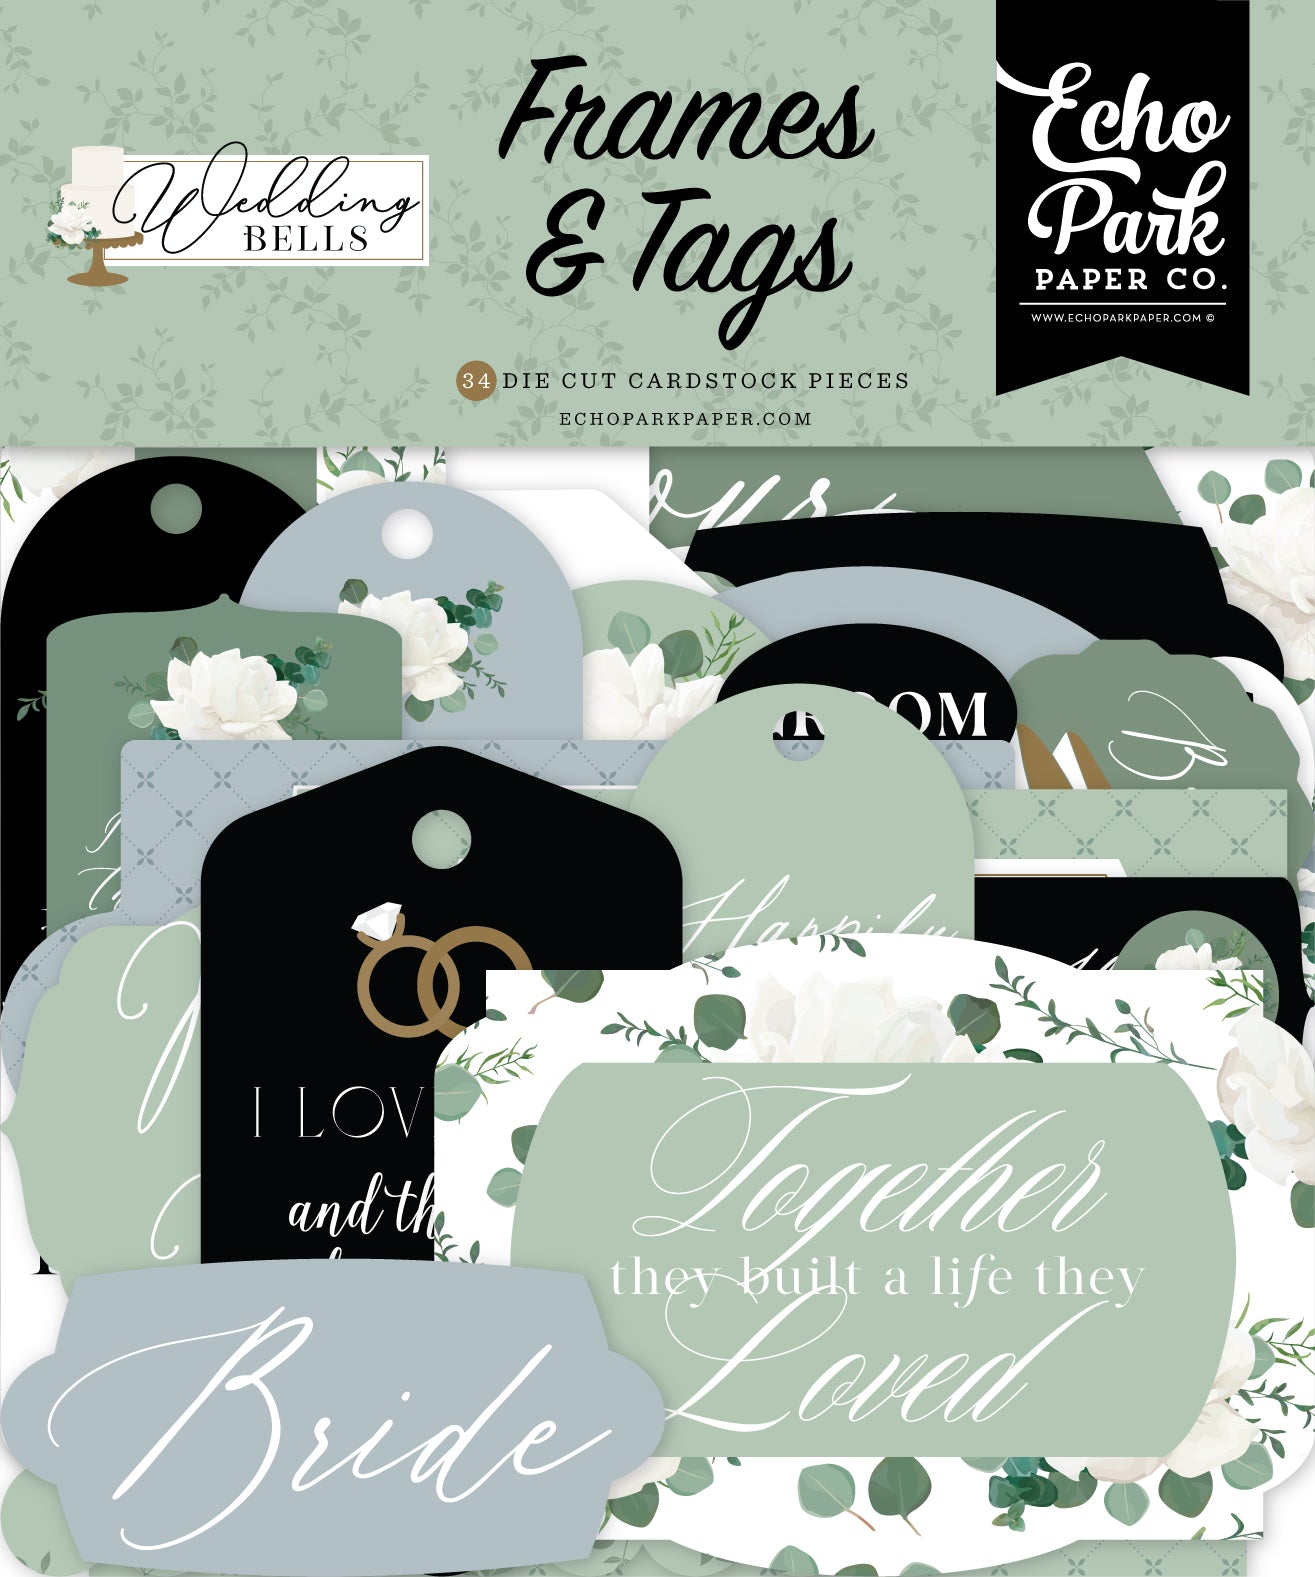 Echo Park - Wedding Bells - Frames & Tags